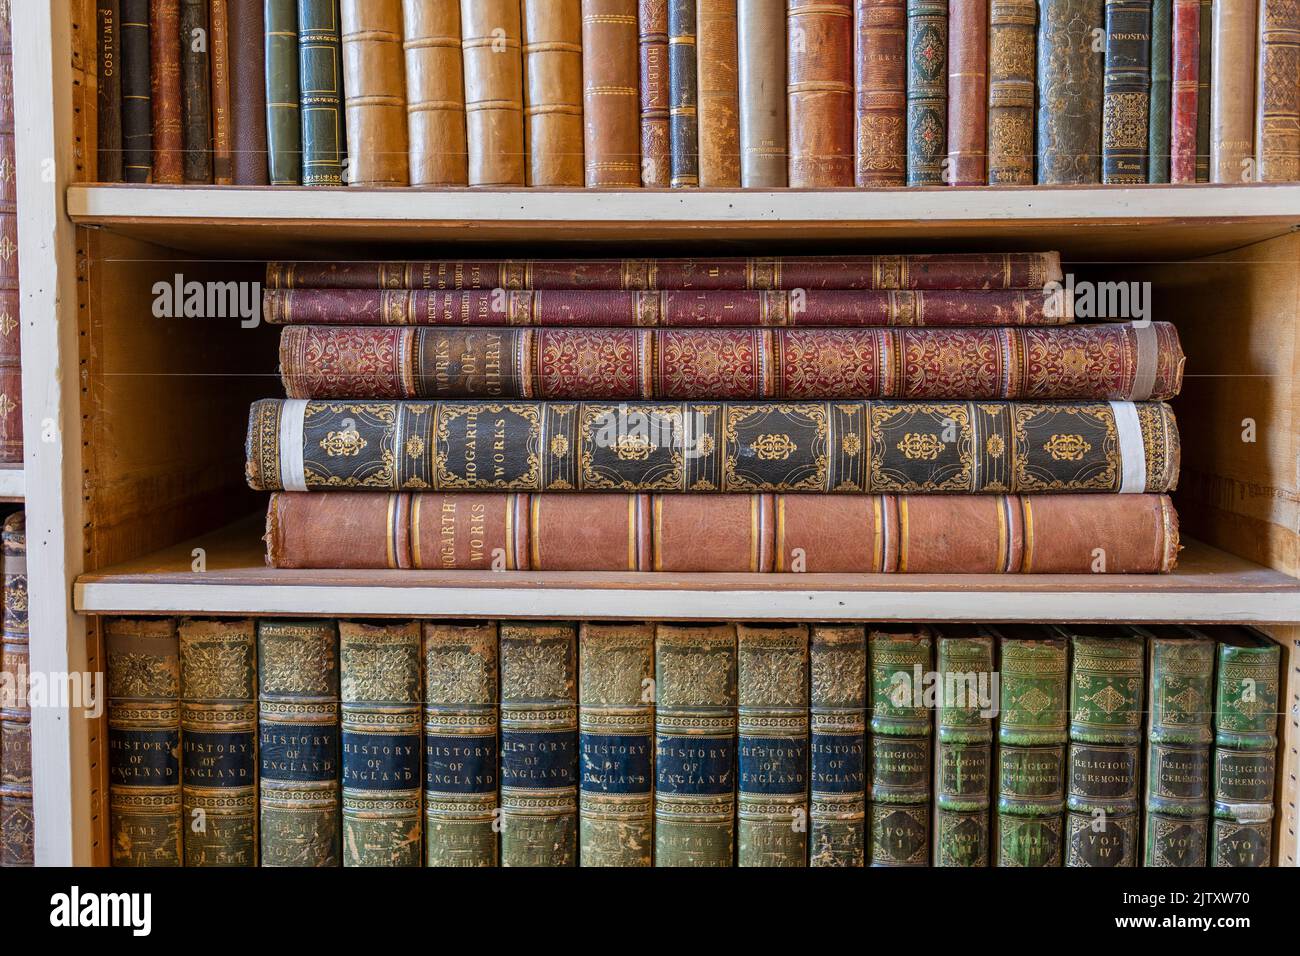 Libreria antica immagini e fotografie stock ad alta risoluzione - Alamy